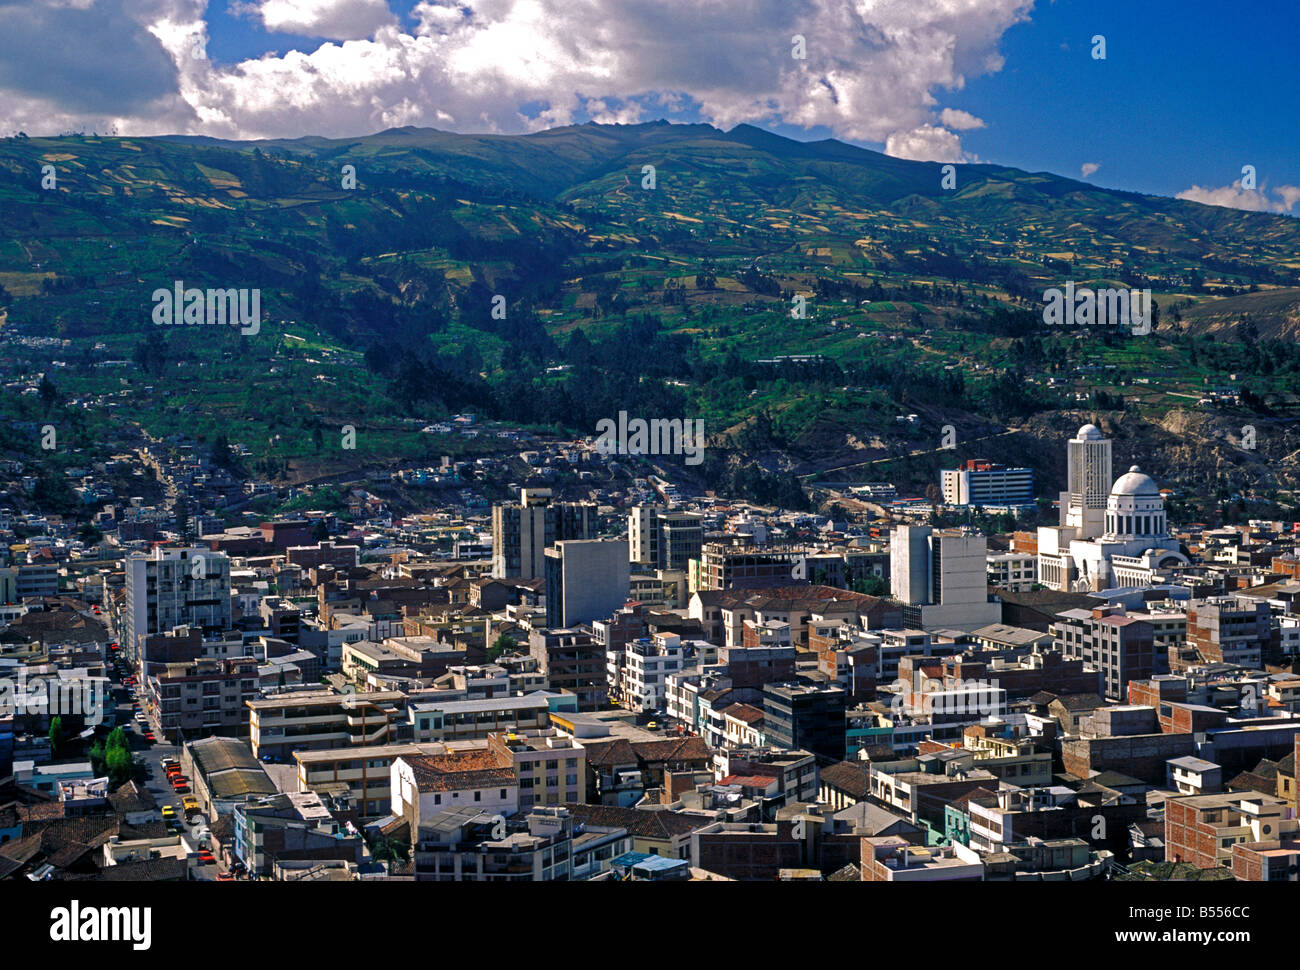 Vue d'ensemble, vue de dessus, lookout, point de vue, belvédère, surplombant, ville d'Ambato, Ambato, Tungurahua, Equateur, province de l'Amérique du Sud Banque D'Images